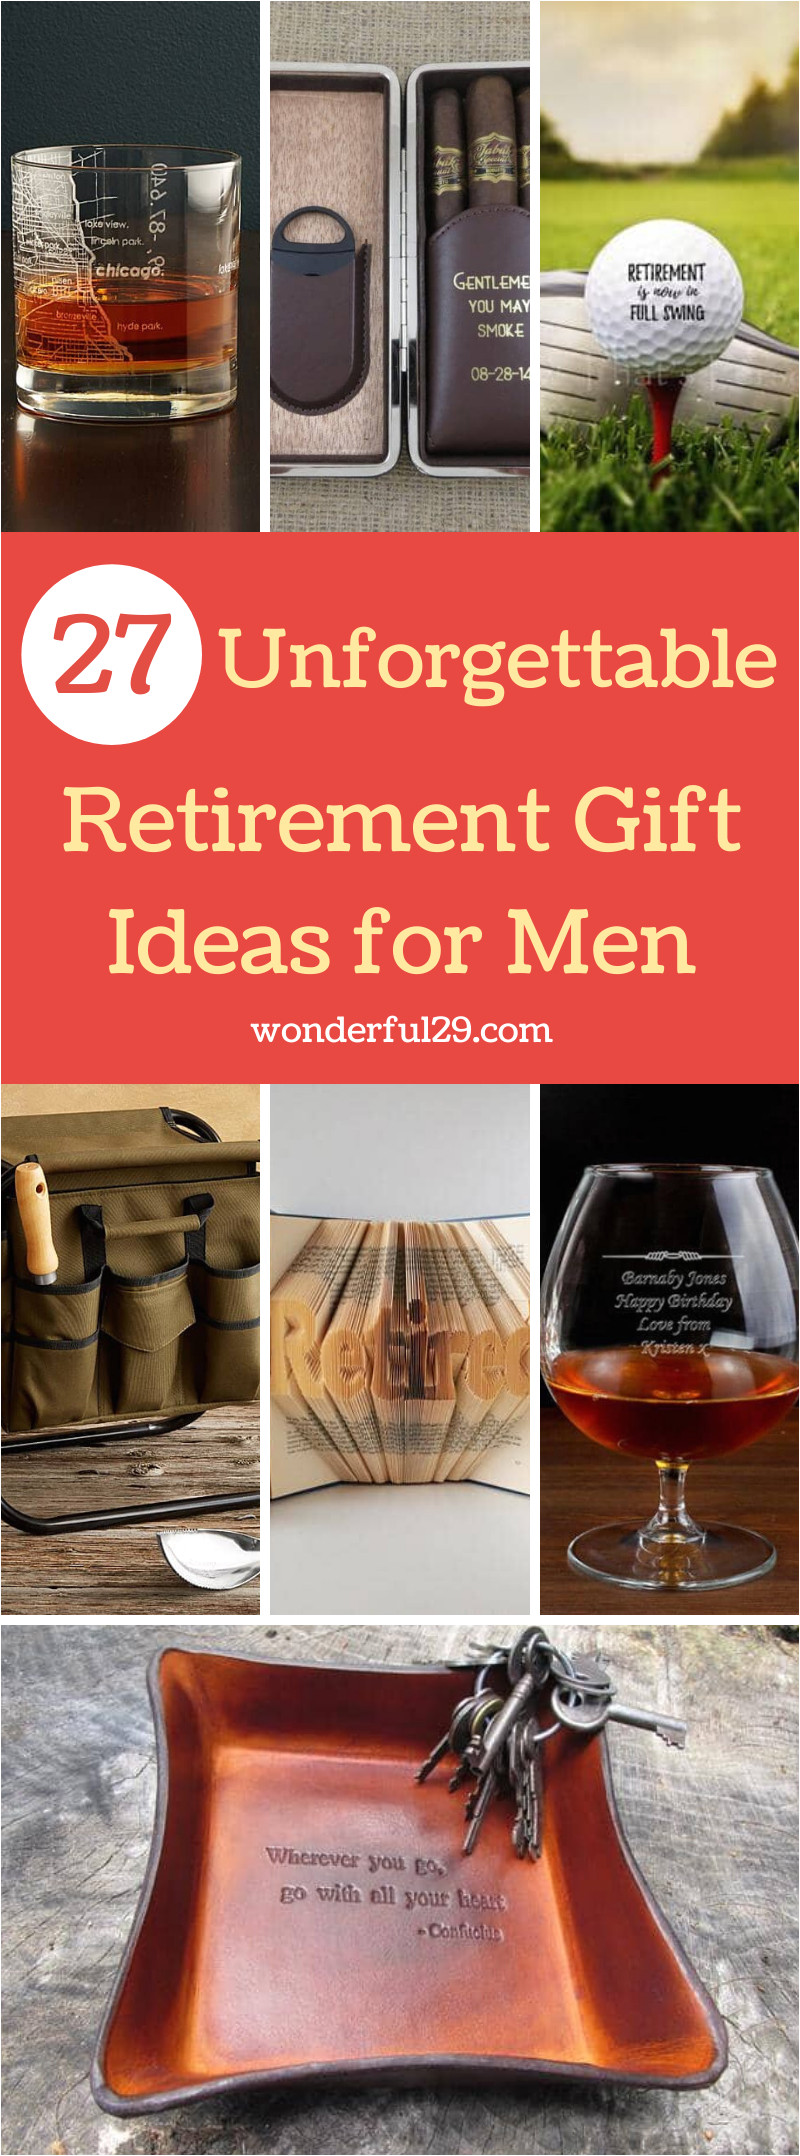 retirement gifts for men w29 pinterest share jpg